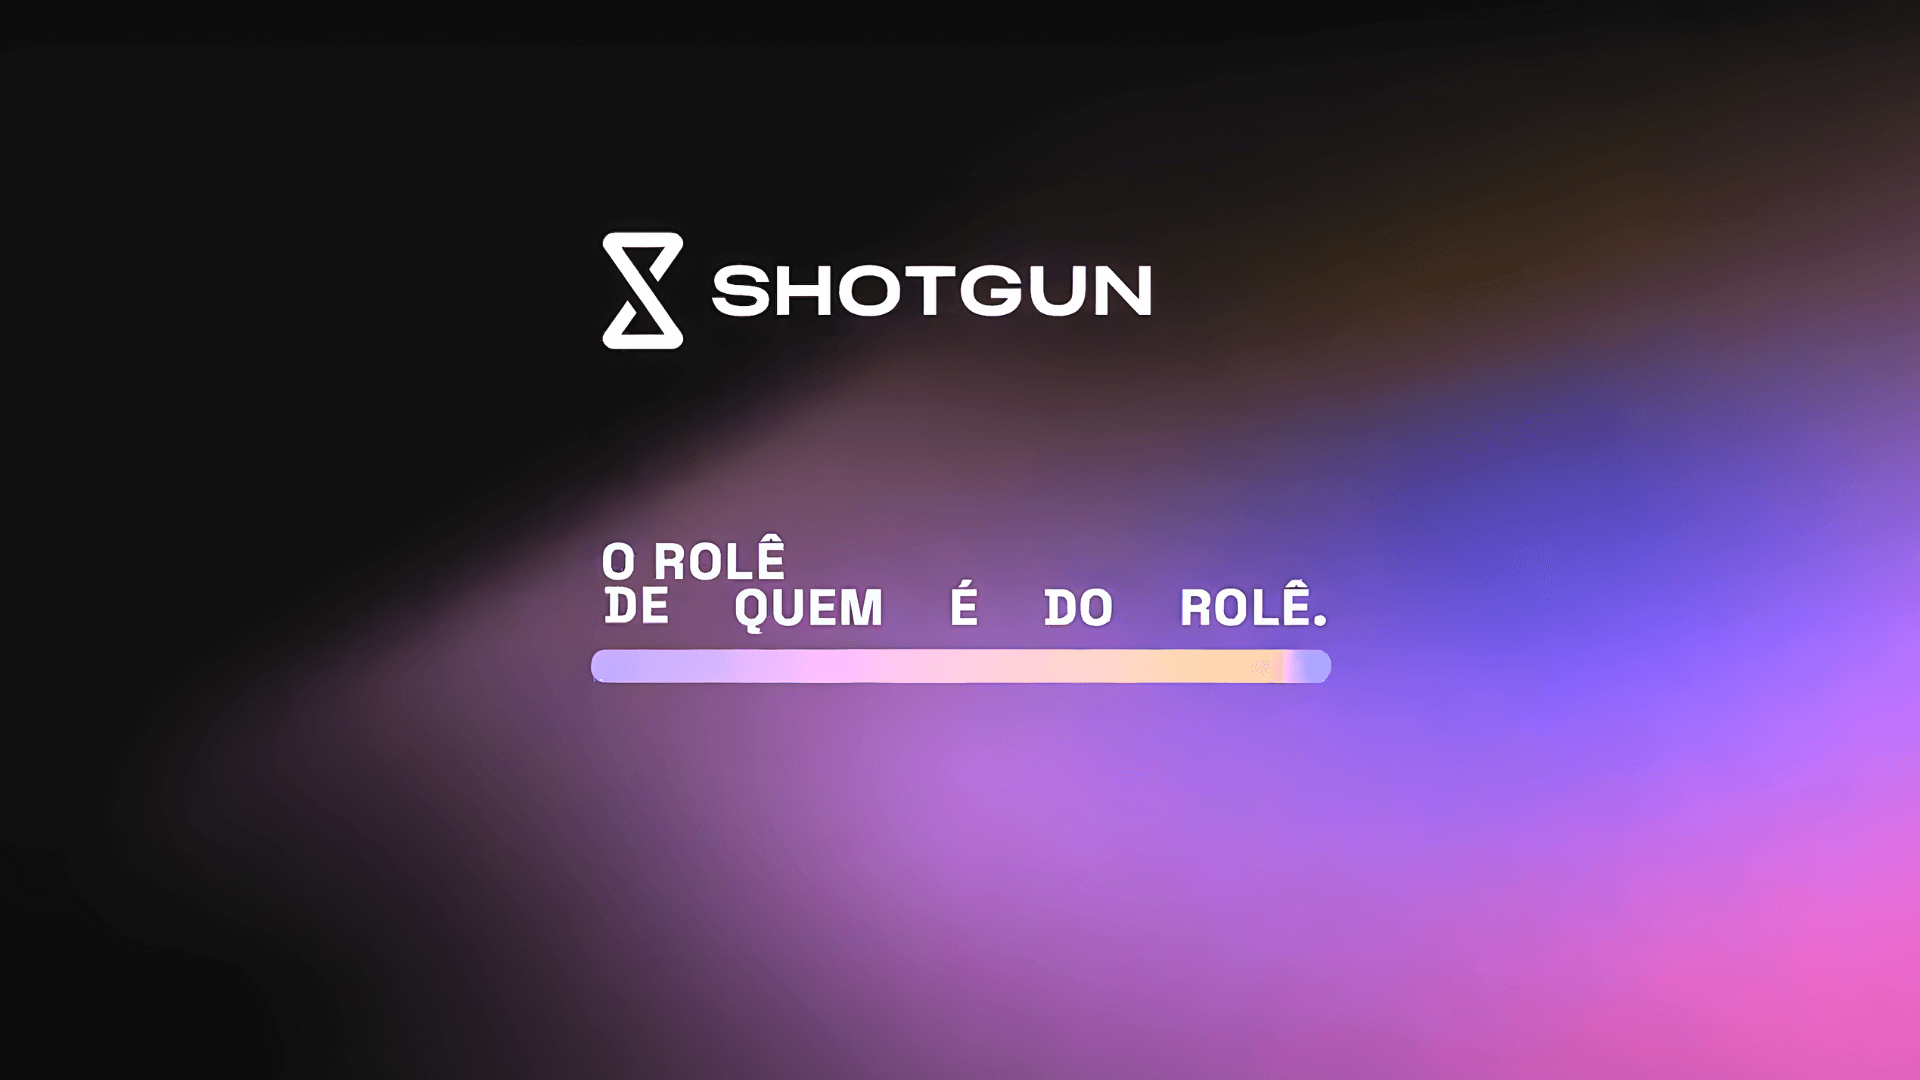 Shotgun mostra quem “é do rolê” em primeira campanha publicitária no Brasil